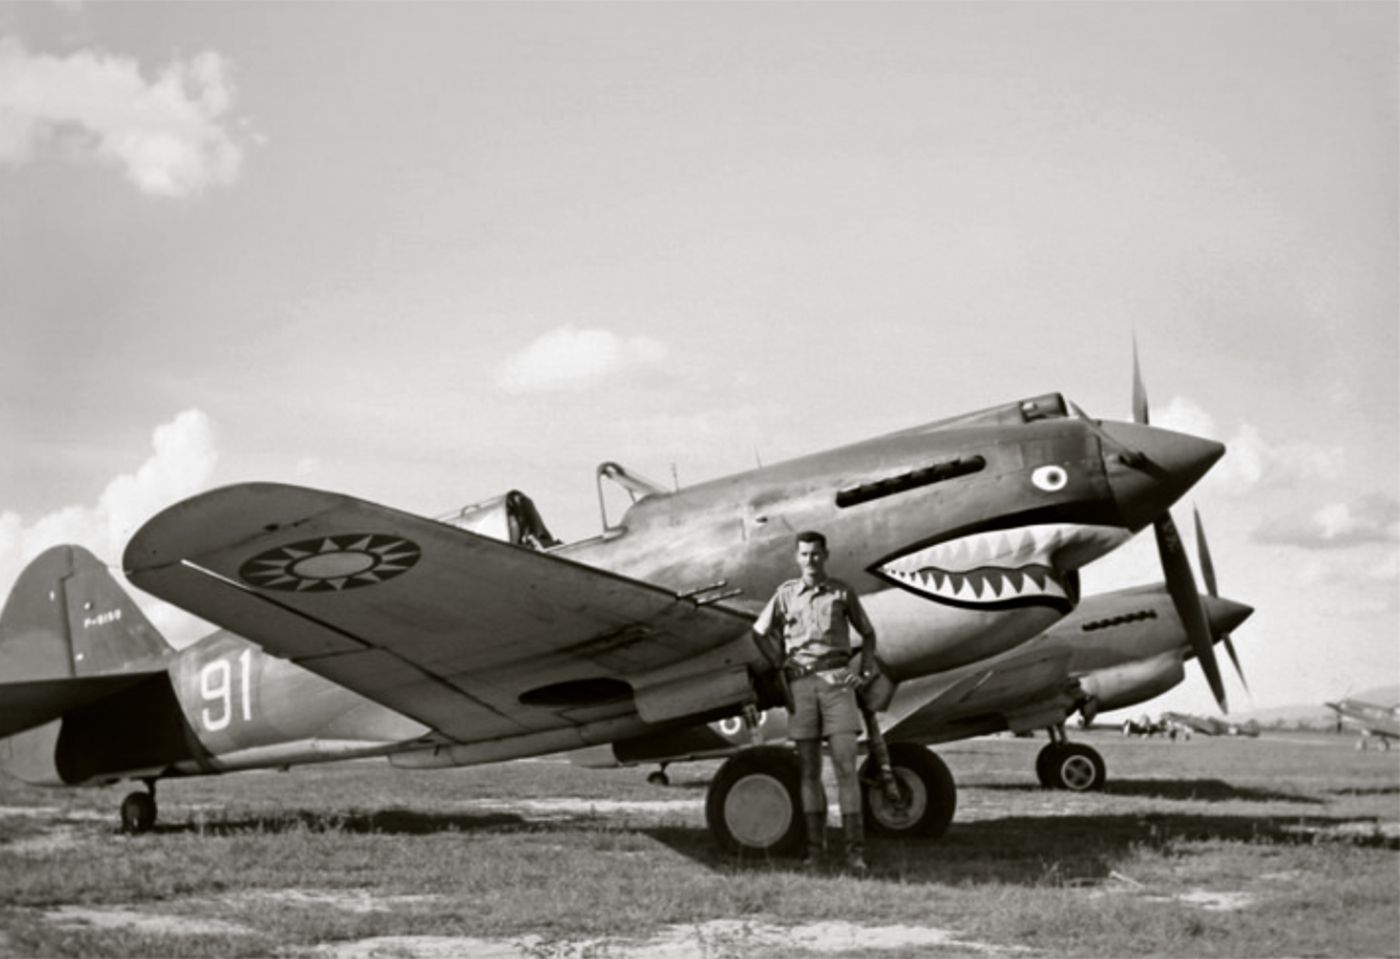 Curtiss Hawk 81A "White 91", AVG, 1942